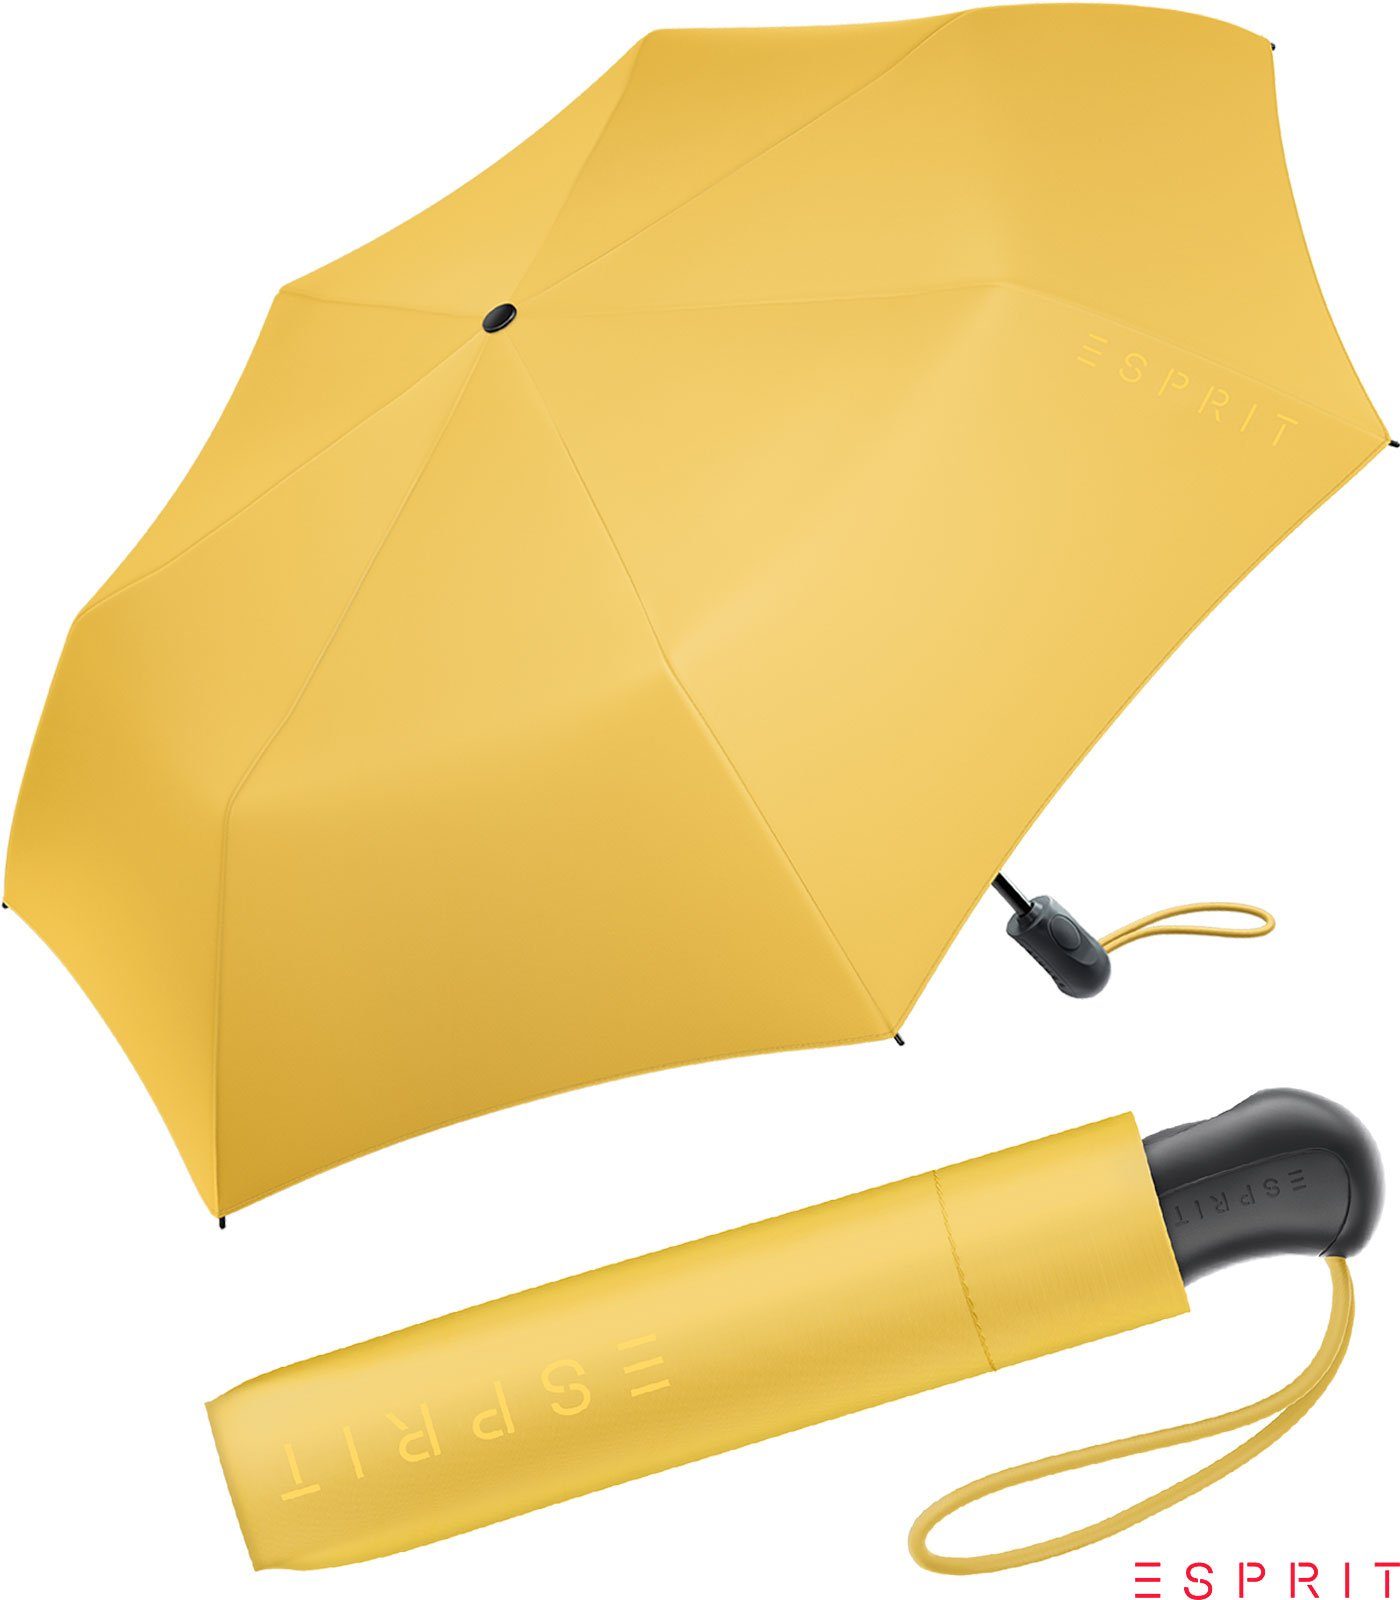 Esprit Taschenregenschirm Damen Easymatic Light Auf-Zu Automatik HW 2022 - mimosa, stabil, praktisch, in den neuen Trendfarben gelb